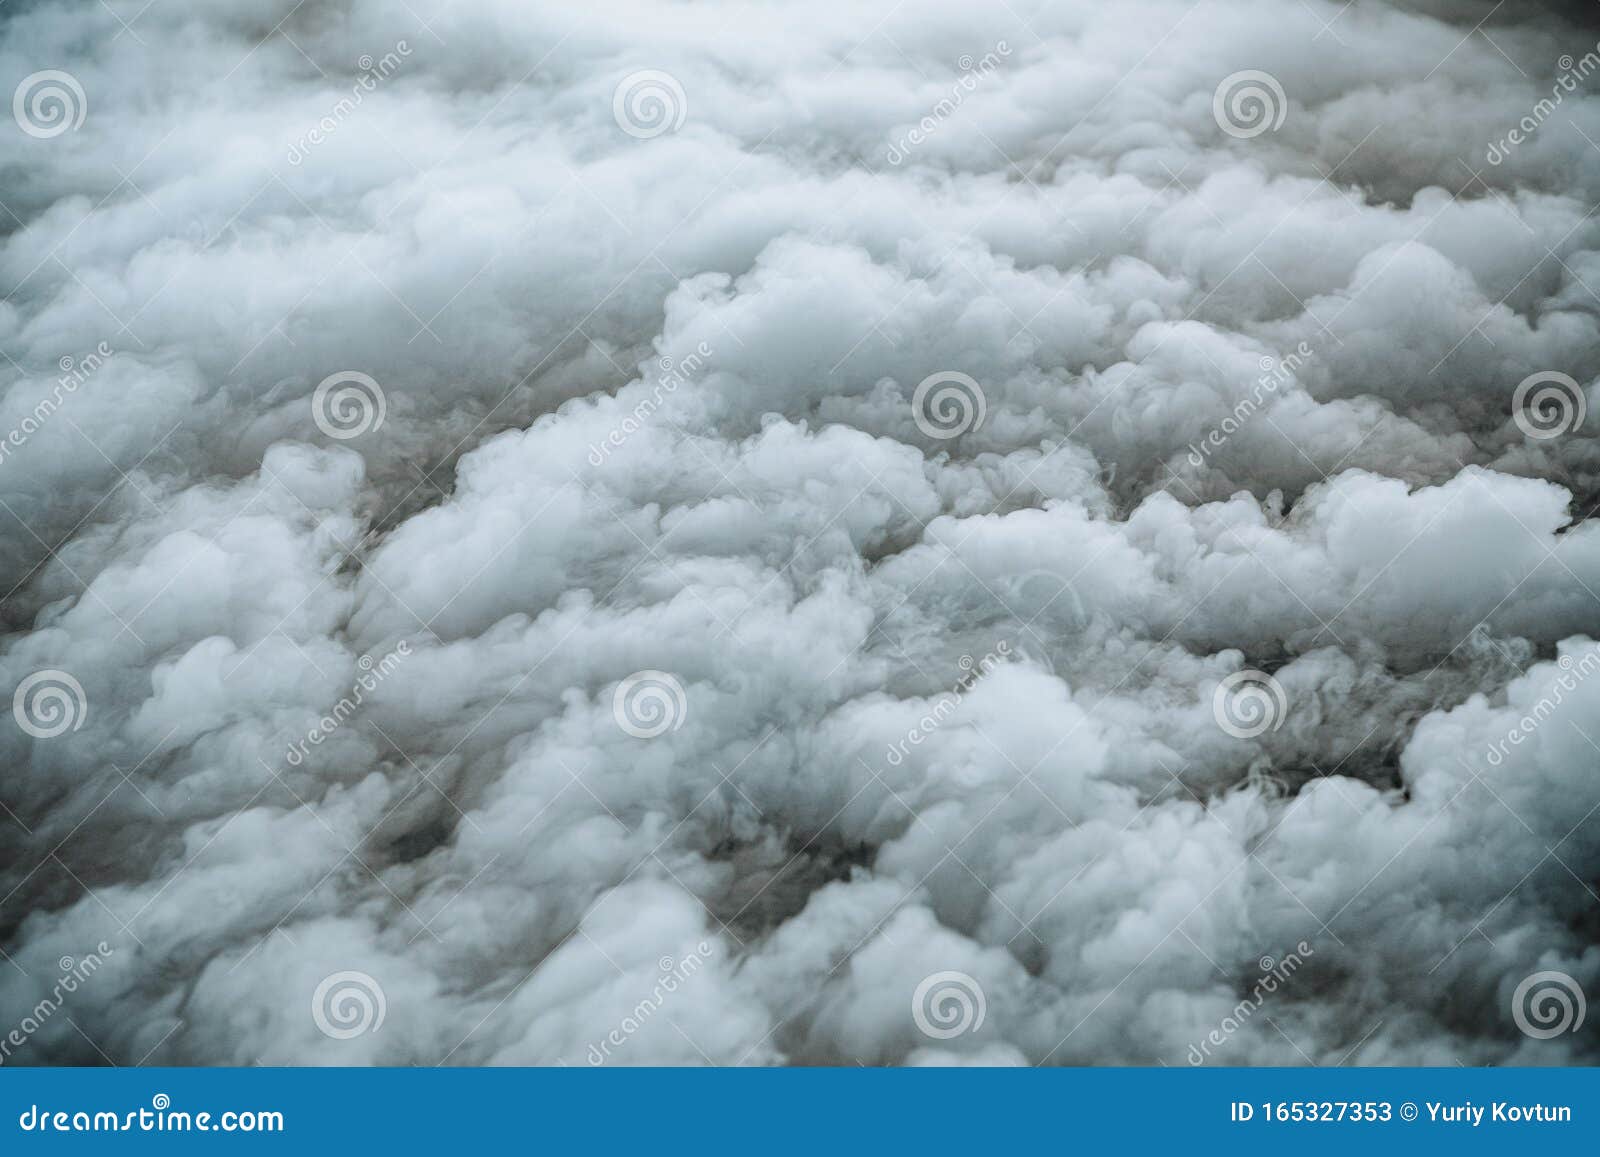 Katholiek wasmiddel rib Witte Rook Kleurt Vloerbedekking Stock Afbeelding - Image of lucht,  verlichting: 165327353